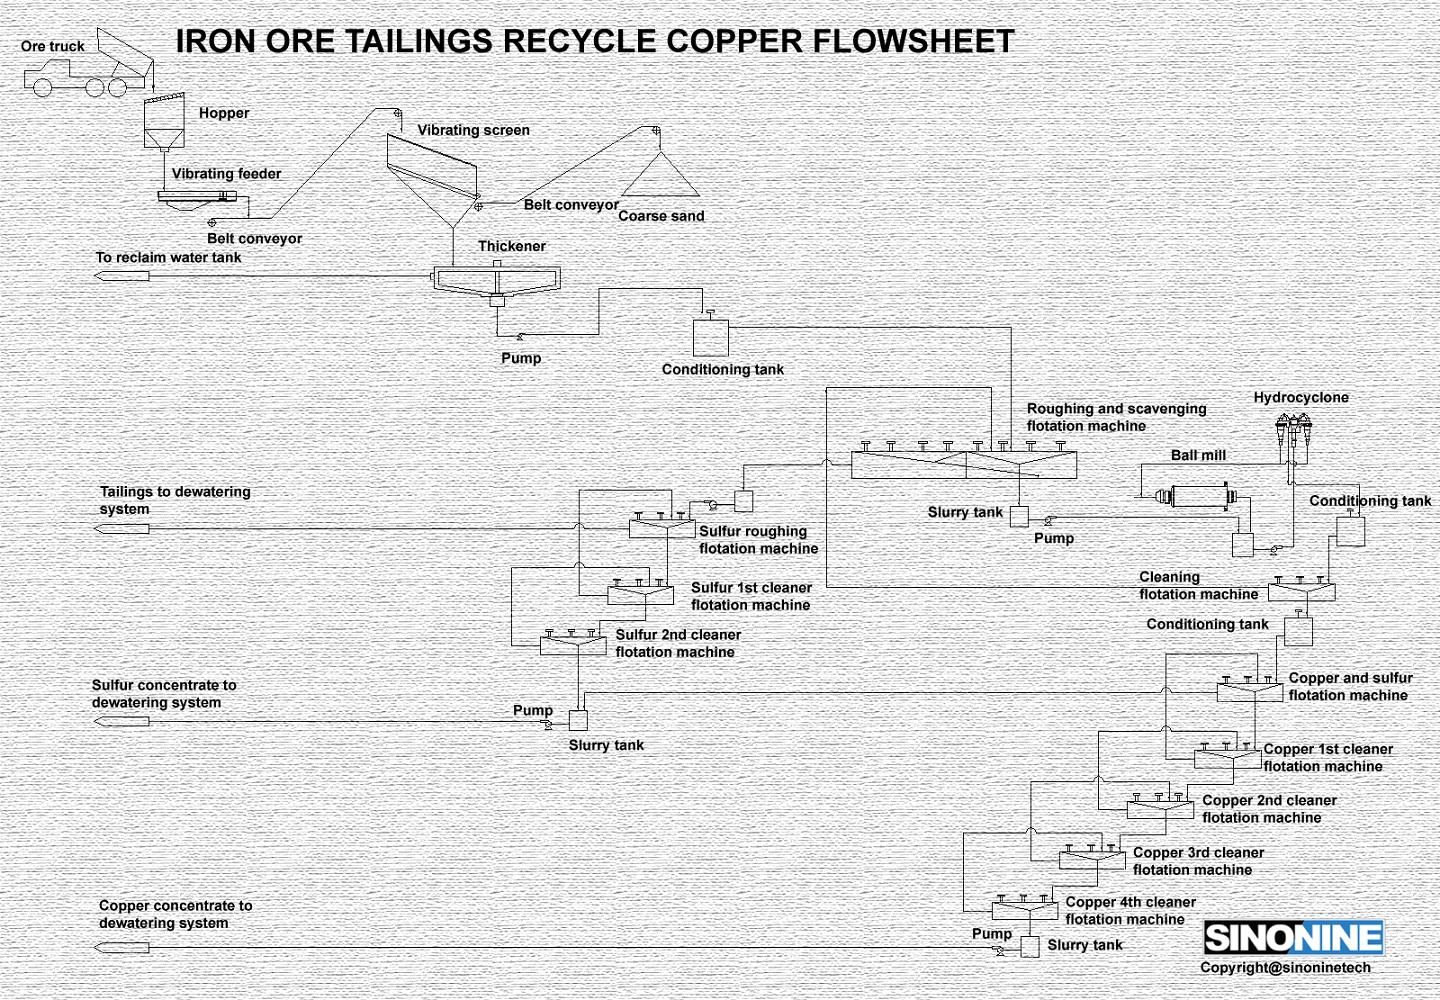 铁尾矿回收铜流程图EN.jpg